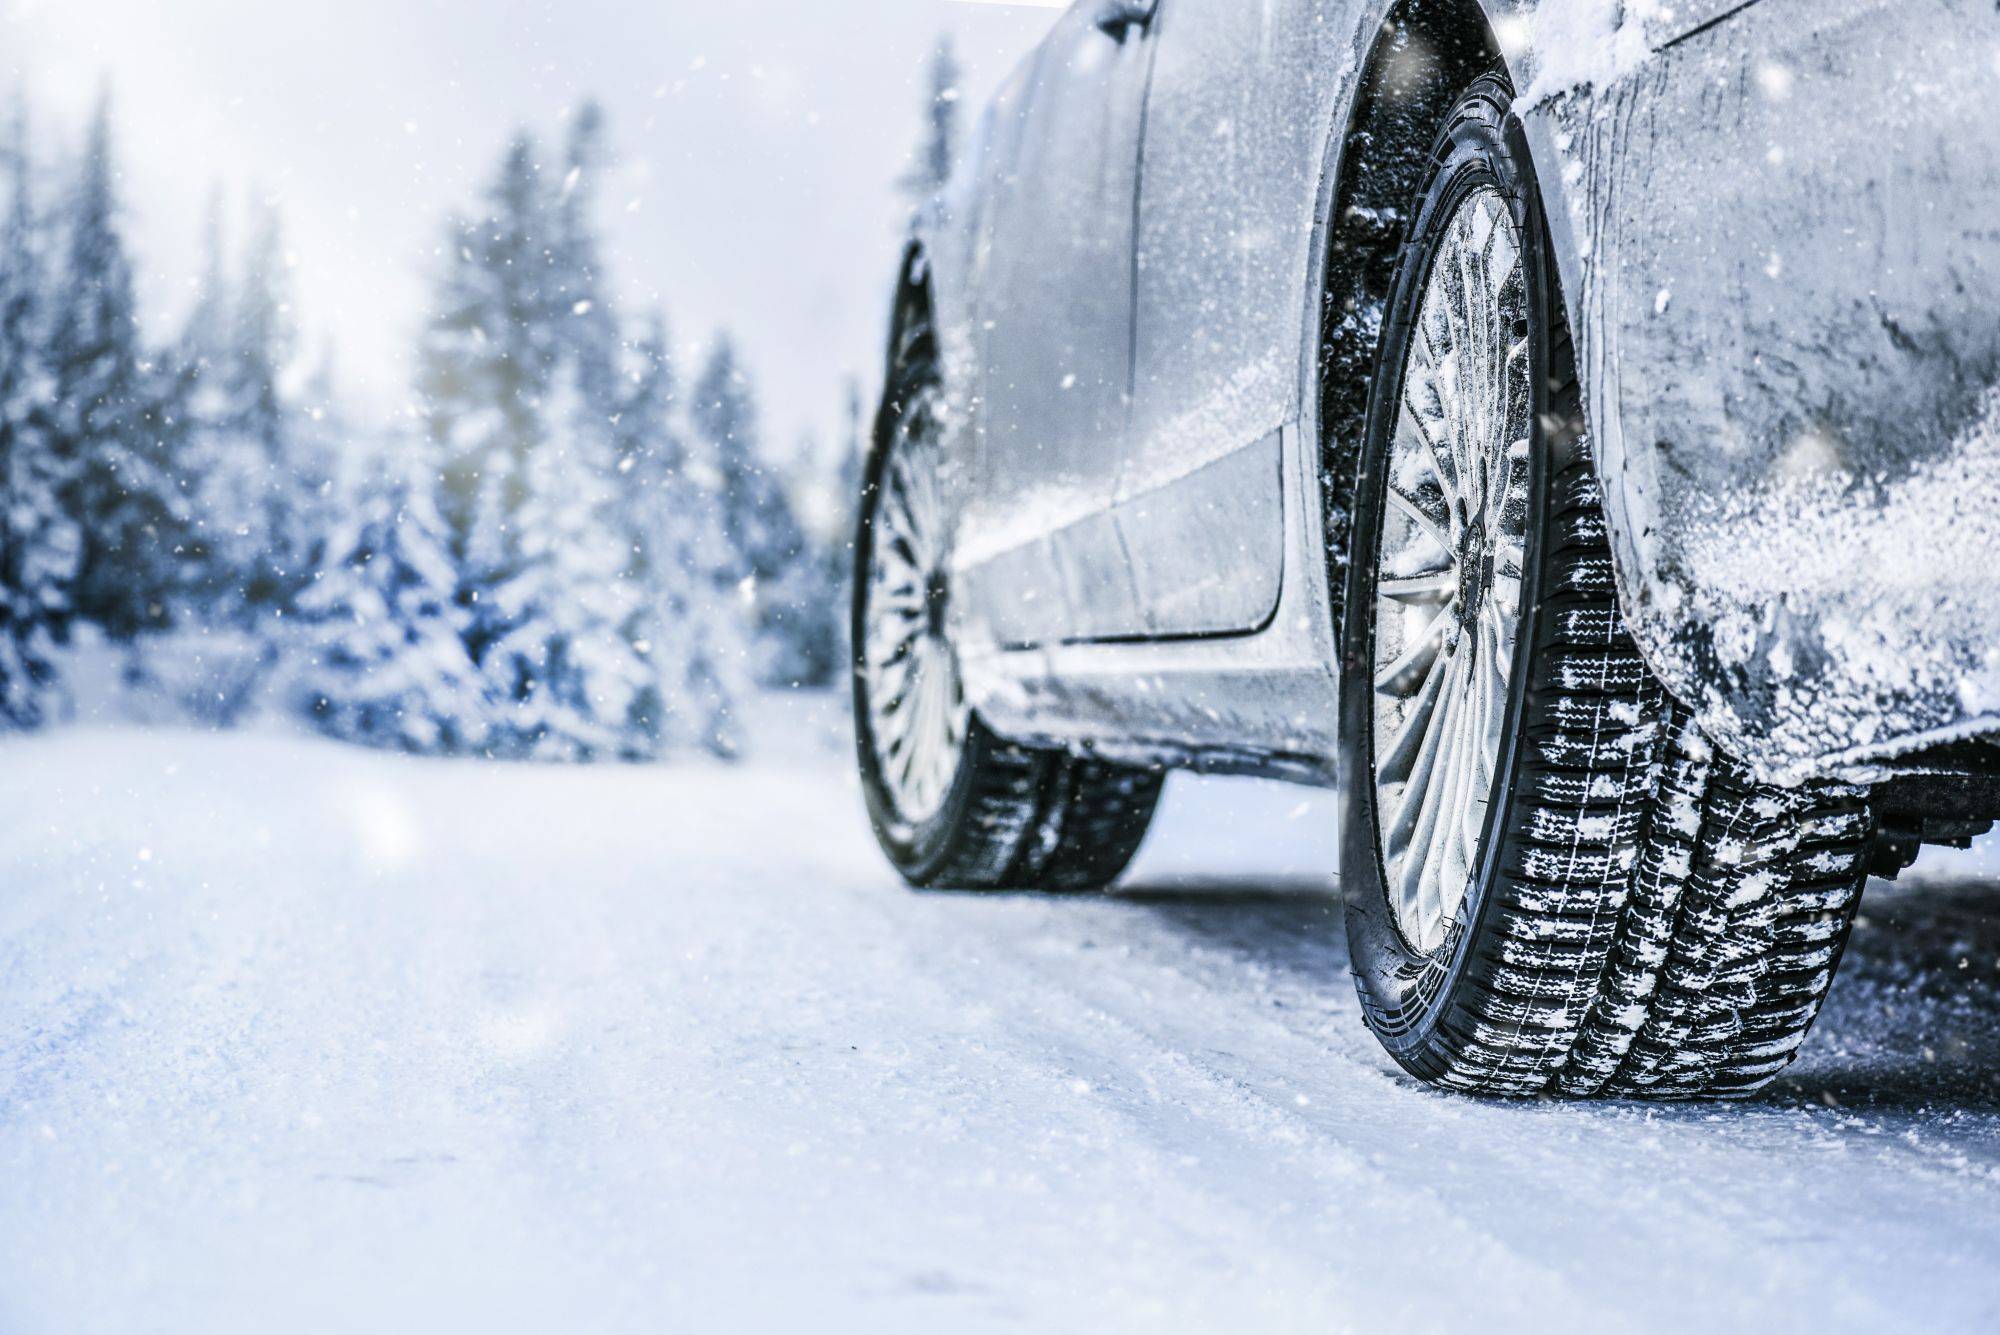 LA LOI MONTAGNE ARRIVE : commandez au plus vite vos pneus neige ! Cernay